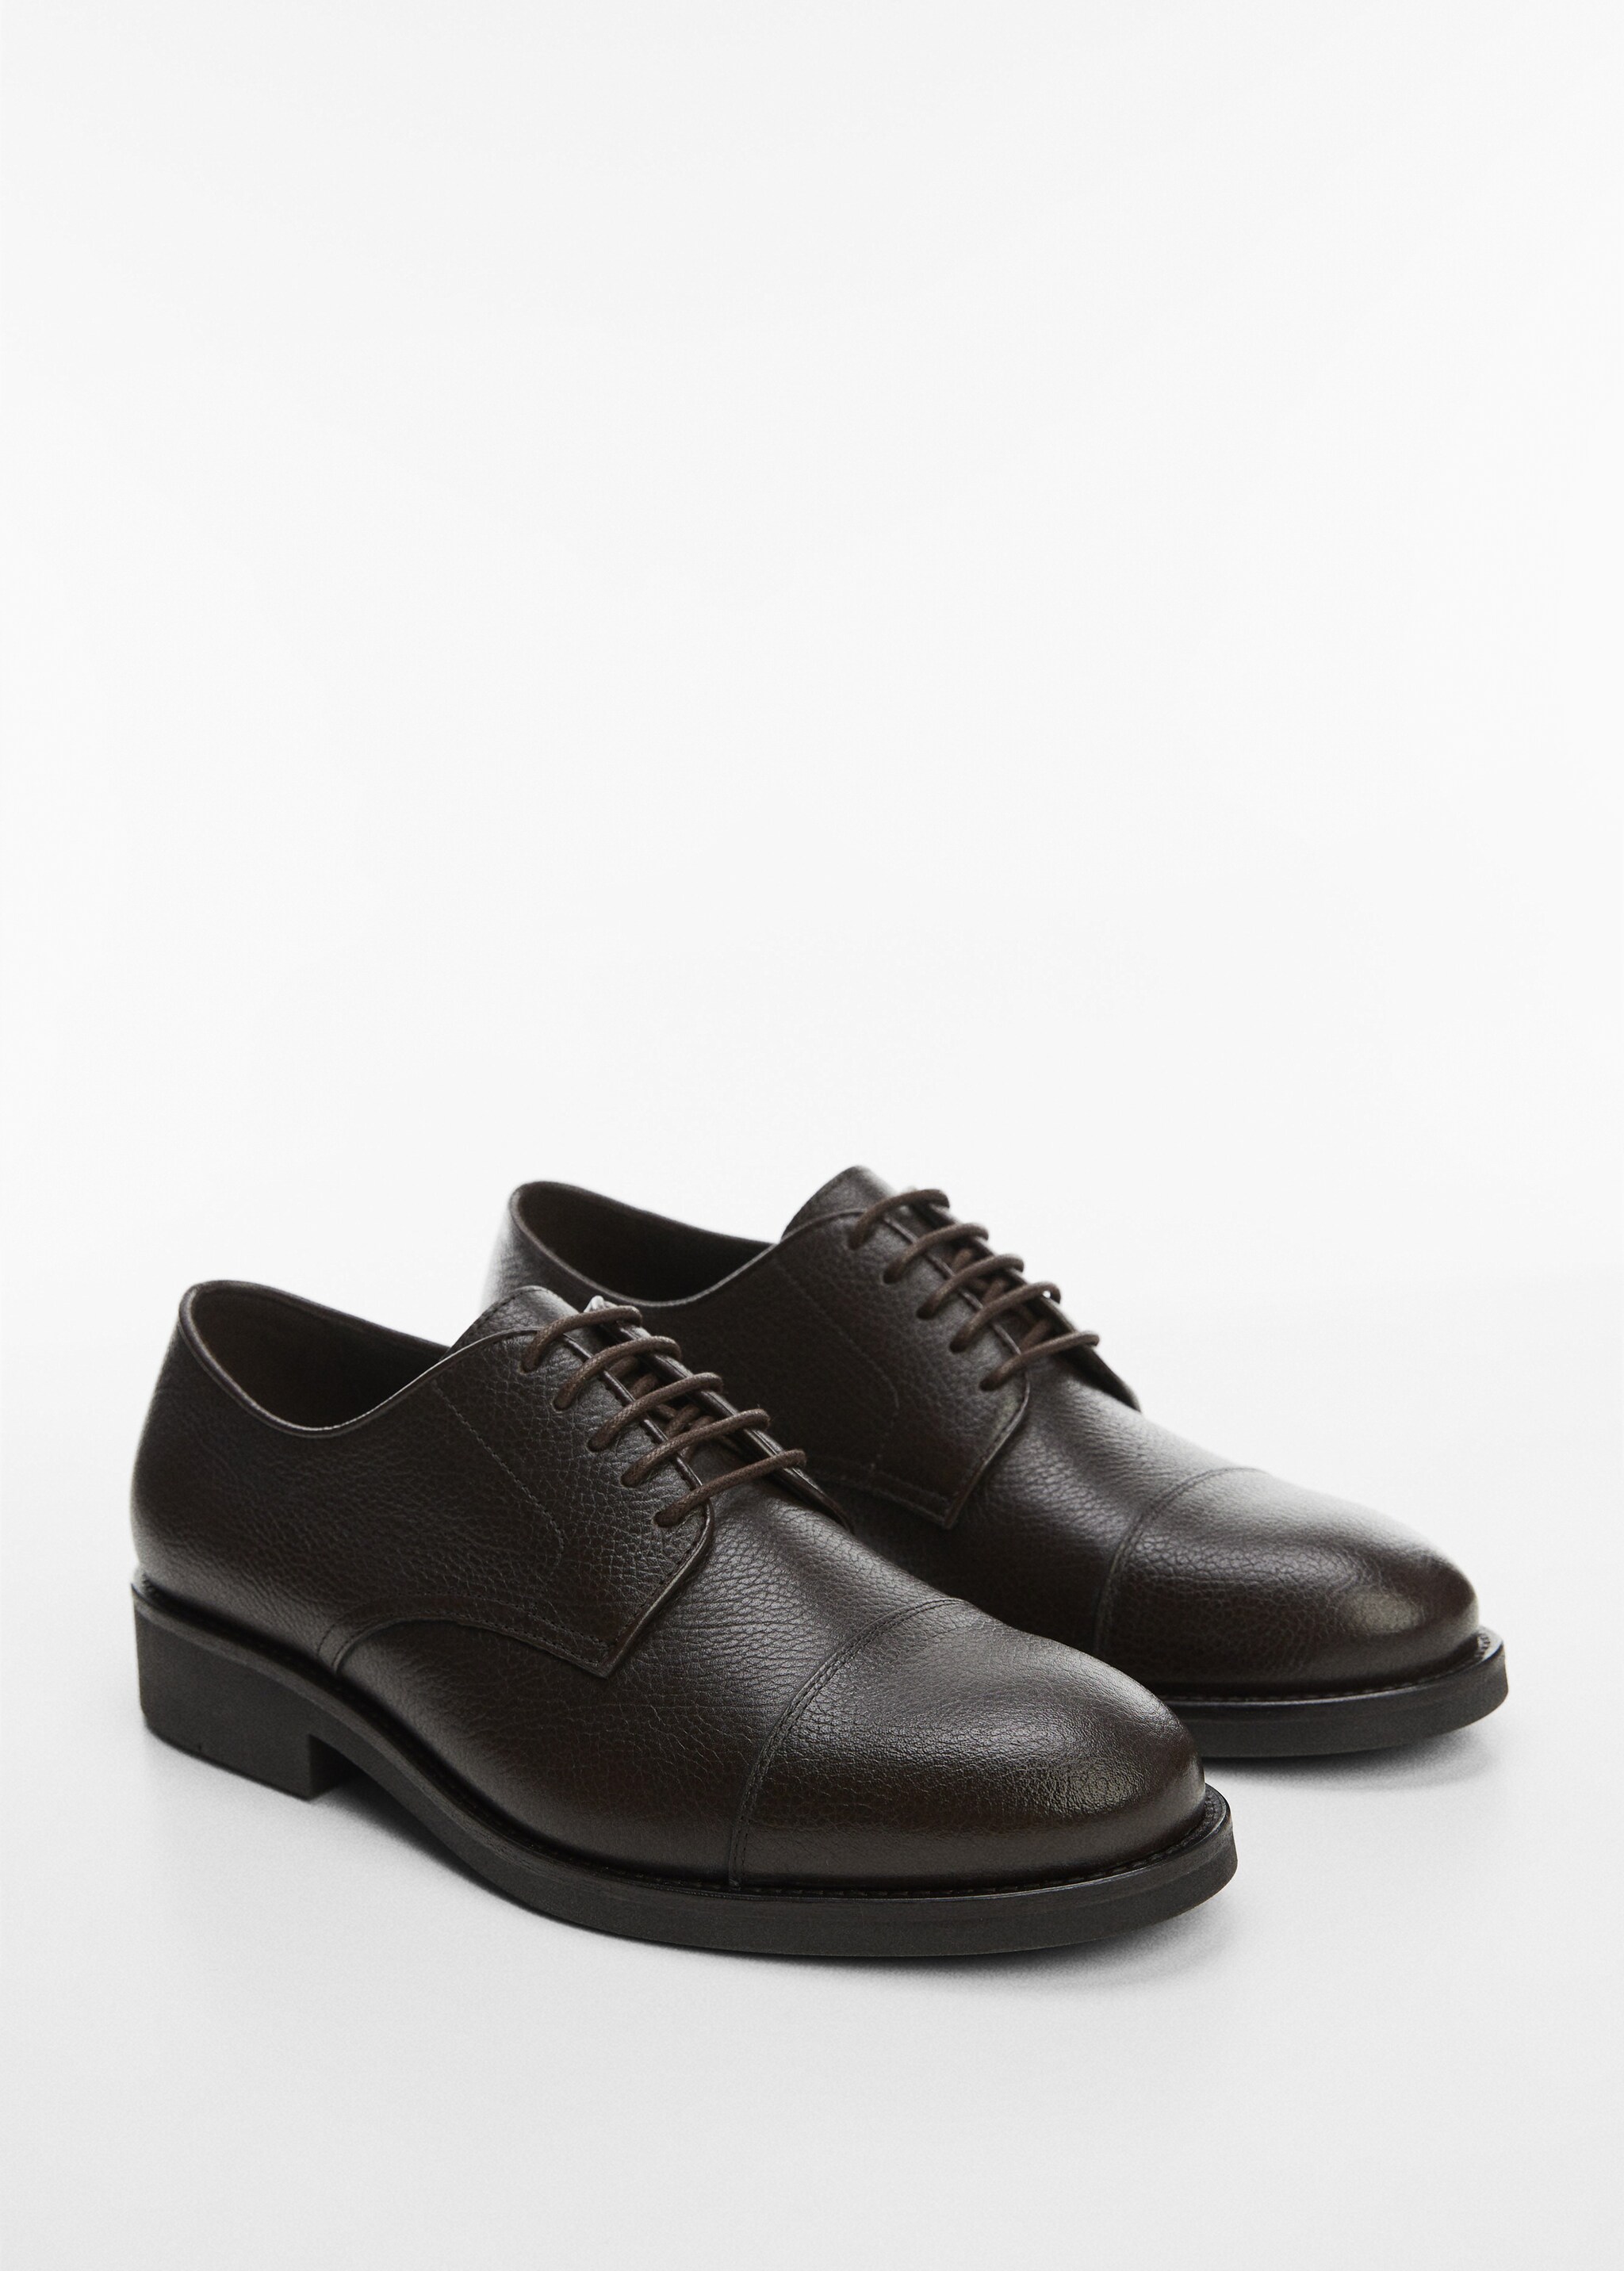 Leather suit shoes - Plan mediu